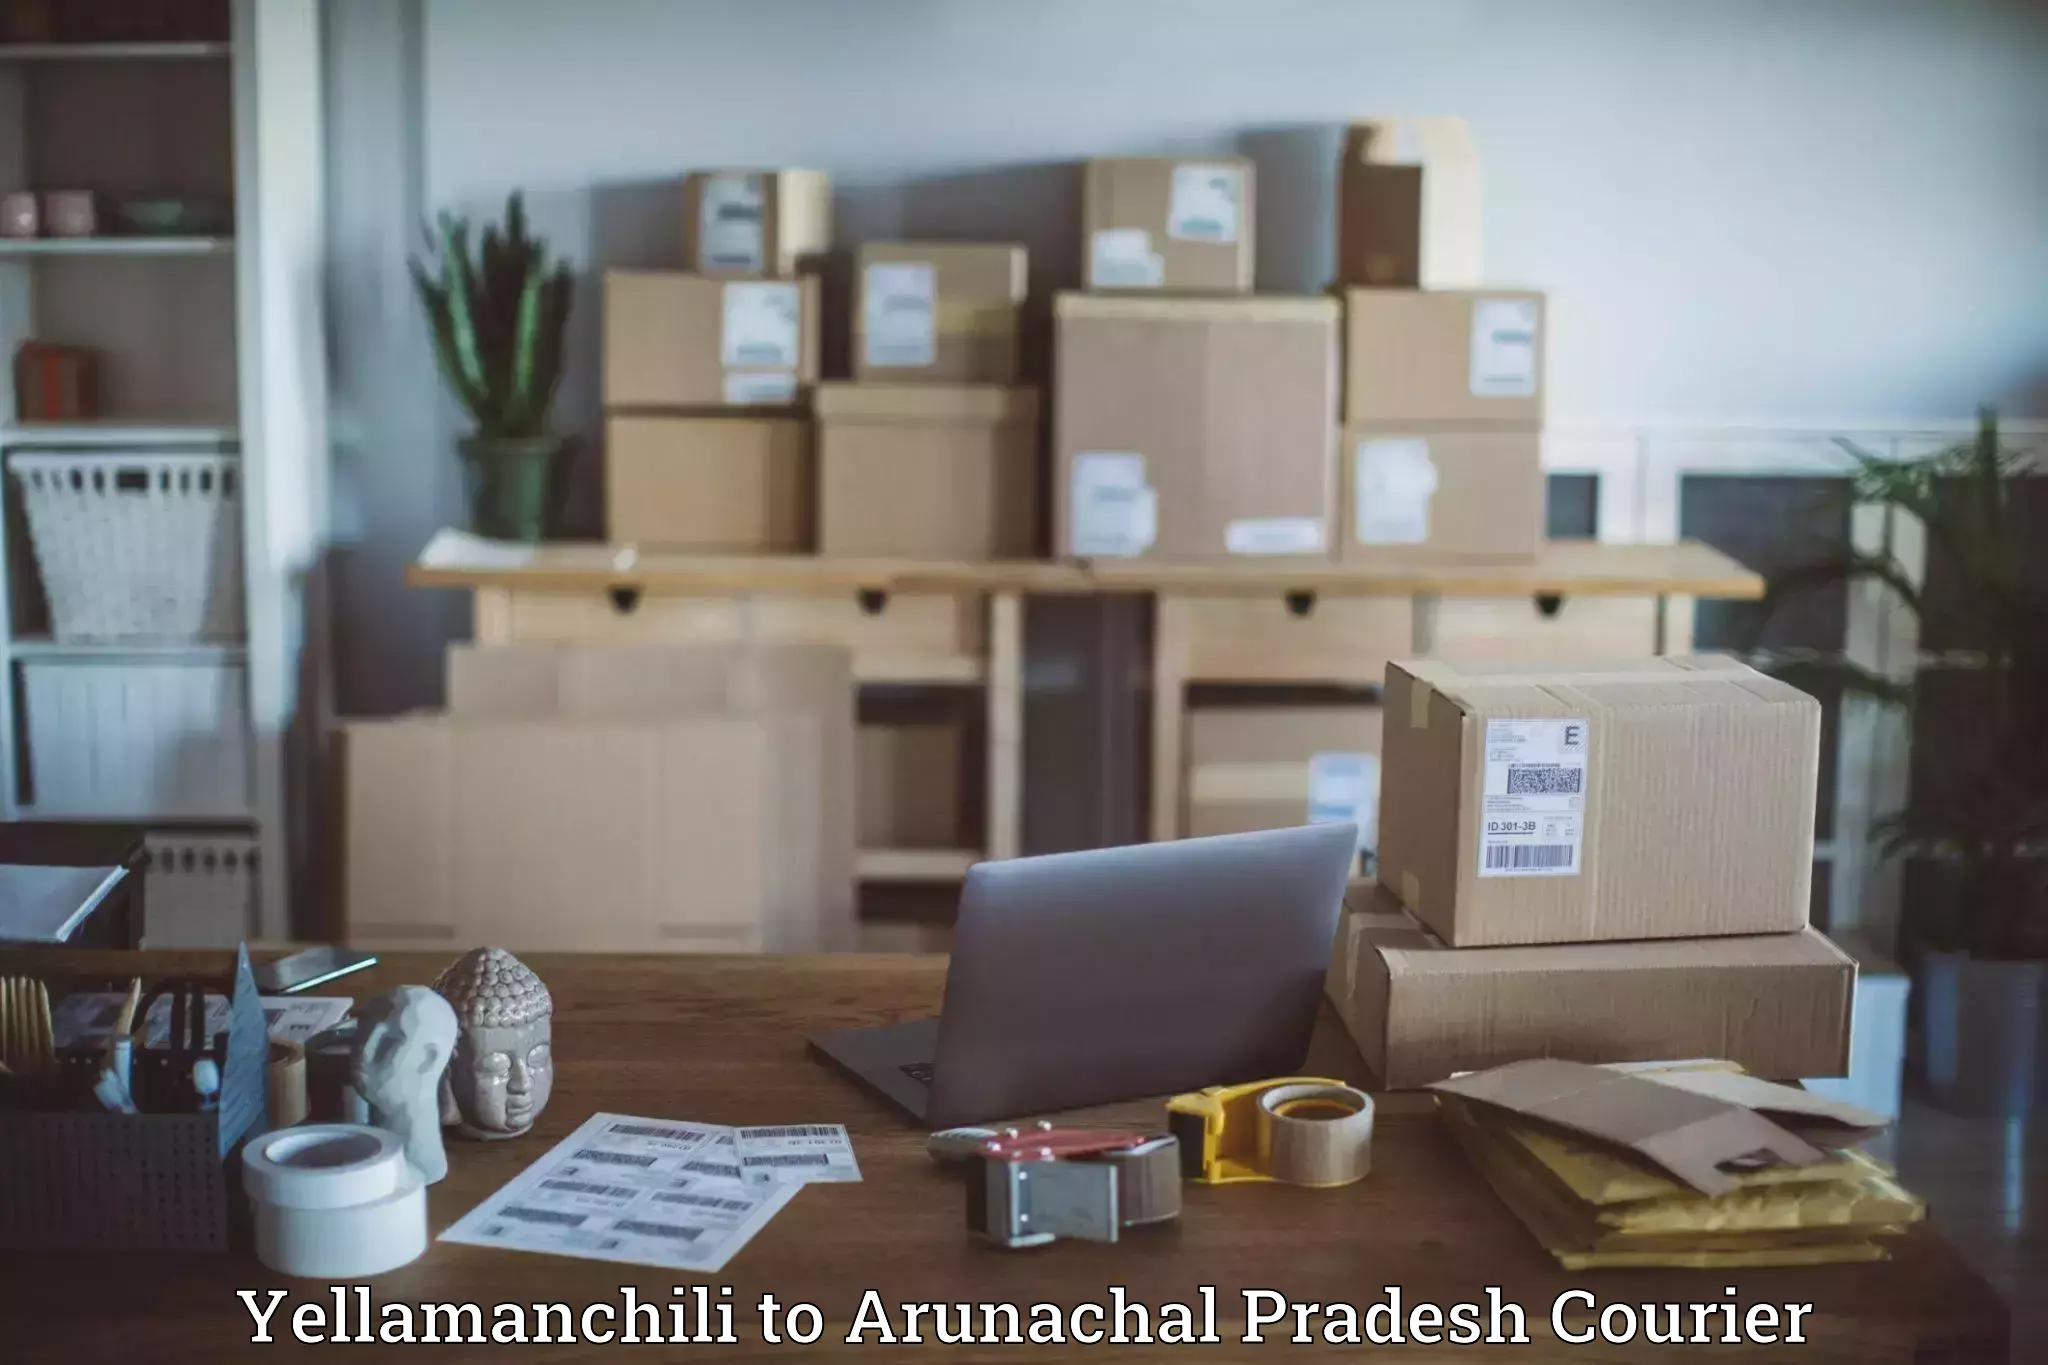 24/7 courier service Yellamanchili to Arunachal Pradesh